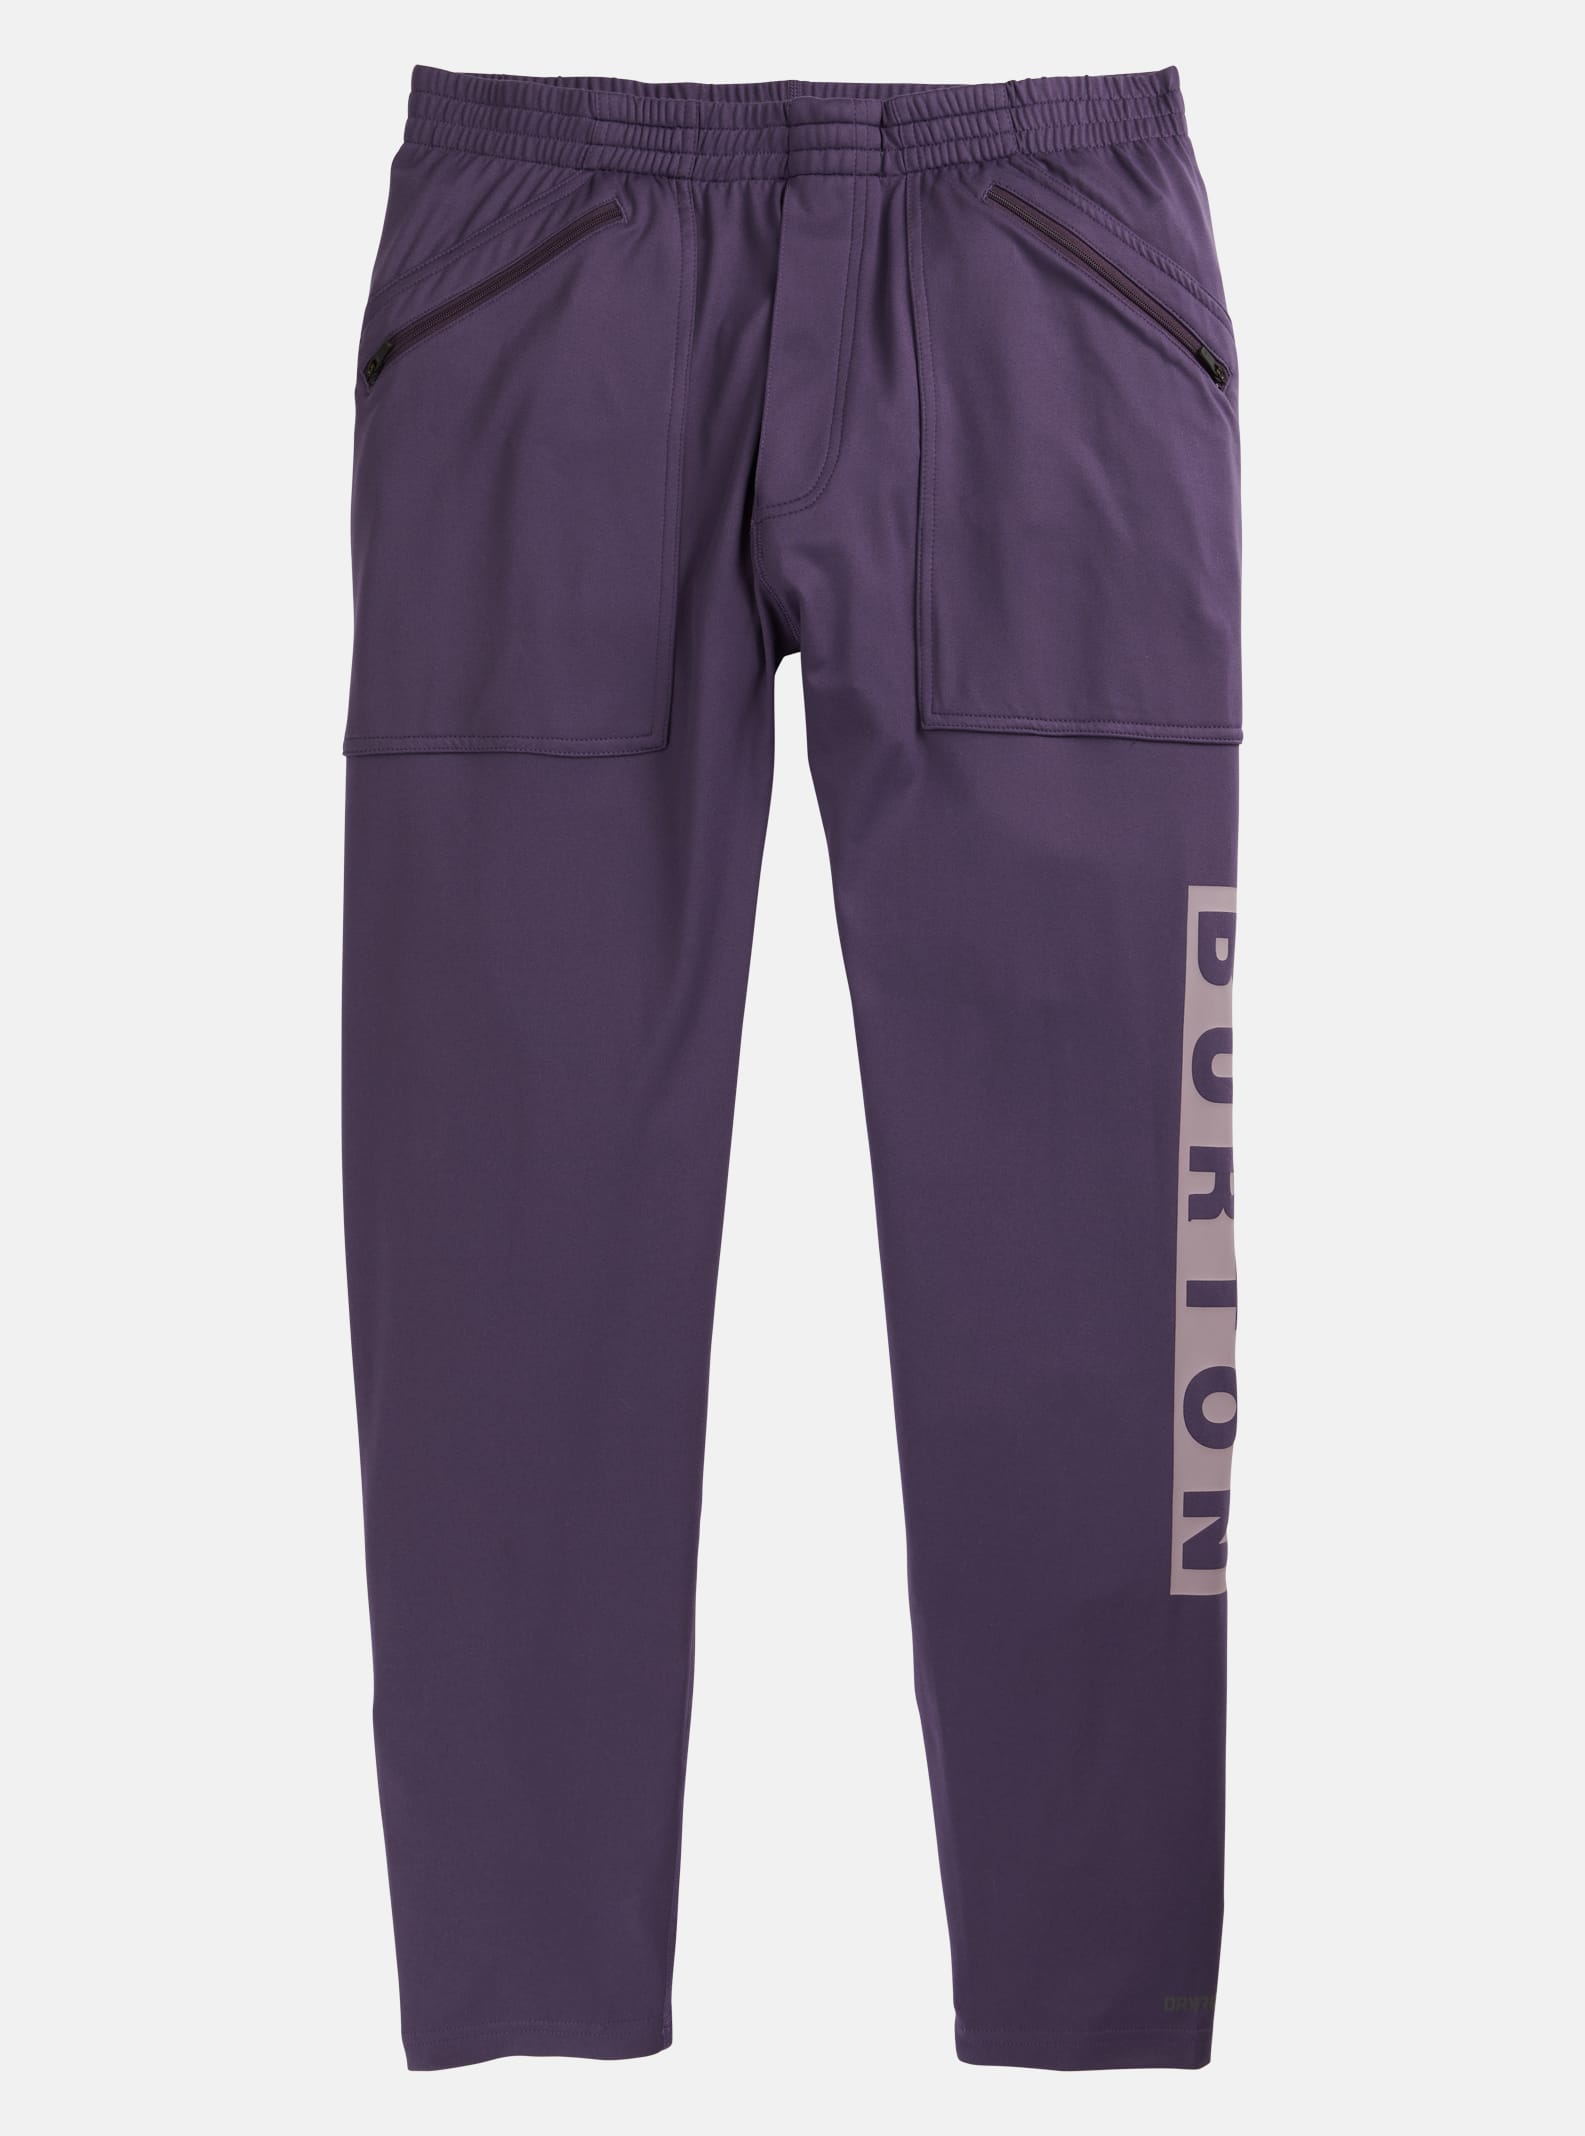 Burton - Pantalon sous-vêtement intermédiaire Stash homme, Violet Halo, L